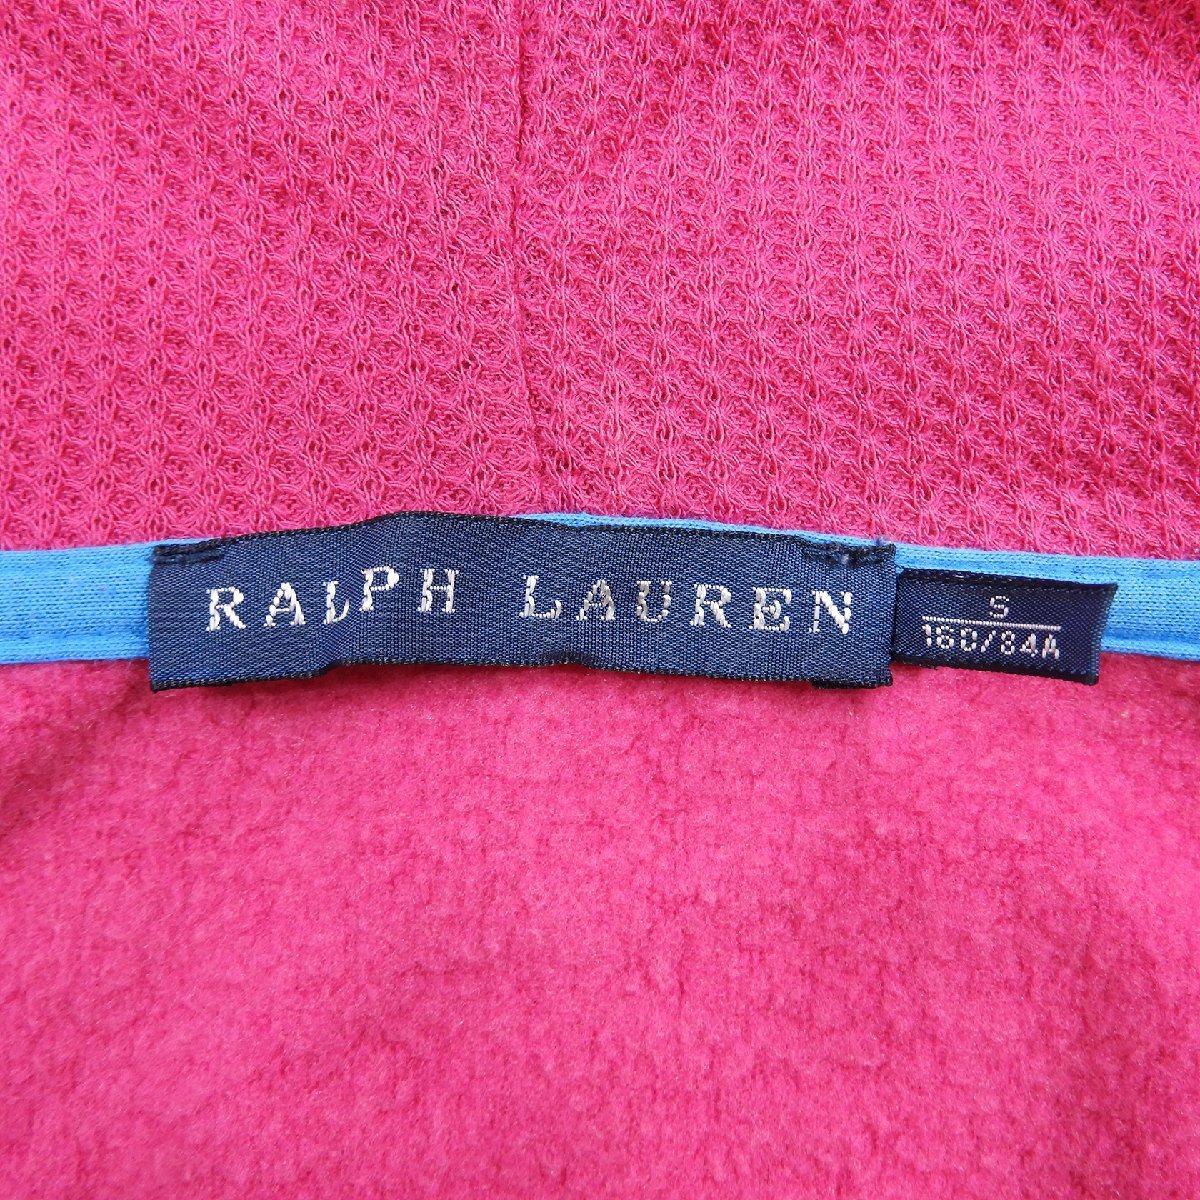 RALPH LAUREN ラルフローレン フルジップ スウェットパーカー ビッグポニー ピンク size S #17958 レディース スエット アメカジ デカロゴ_画像3